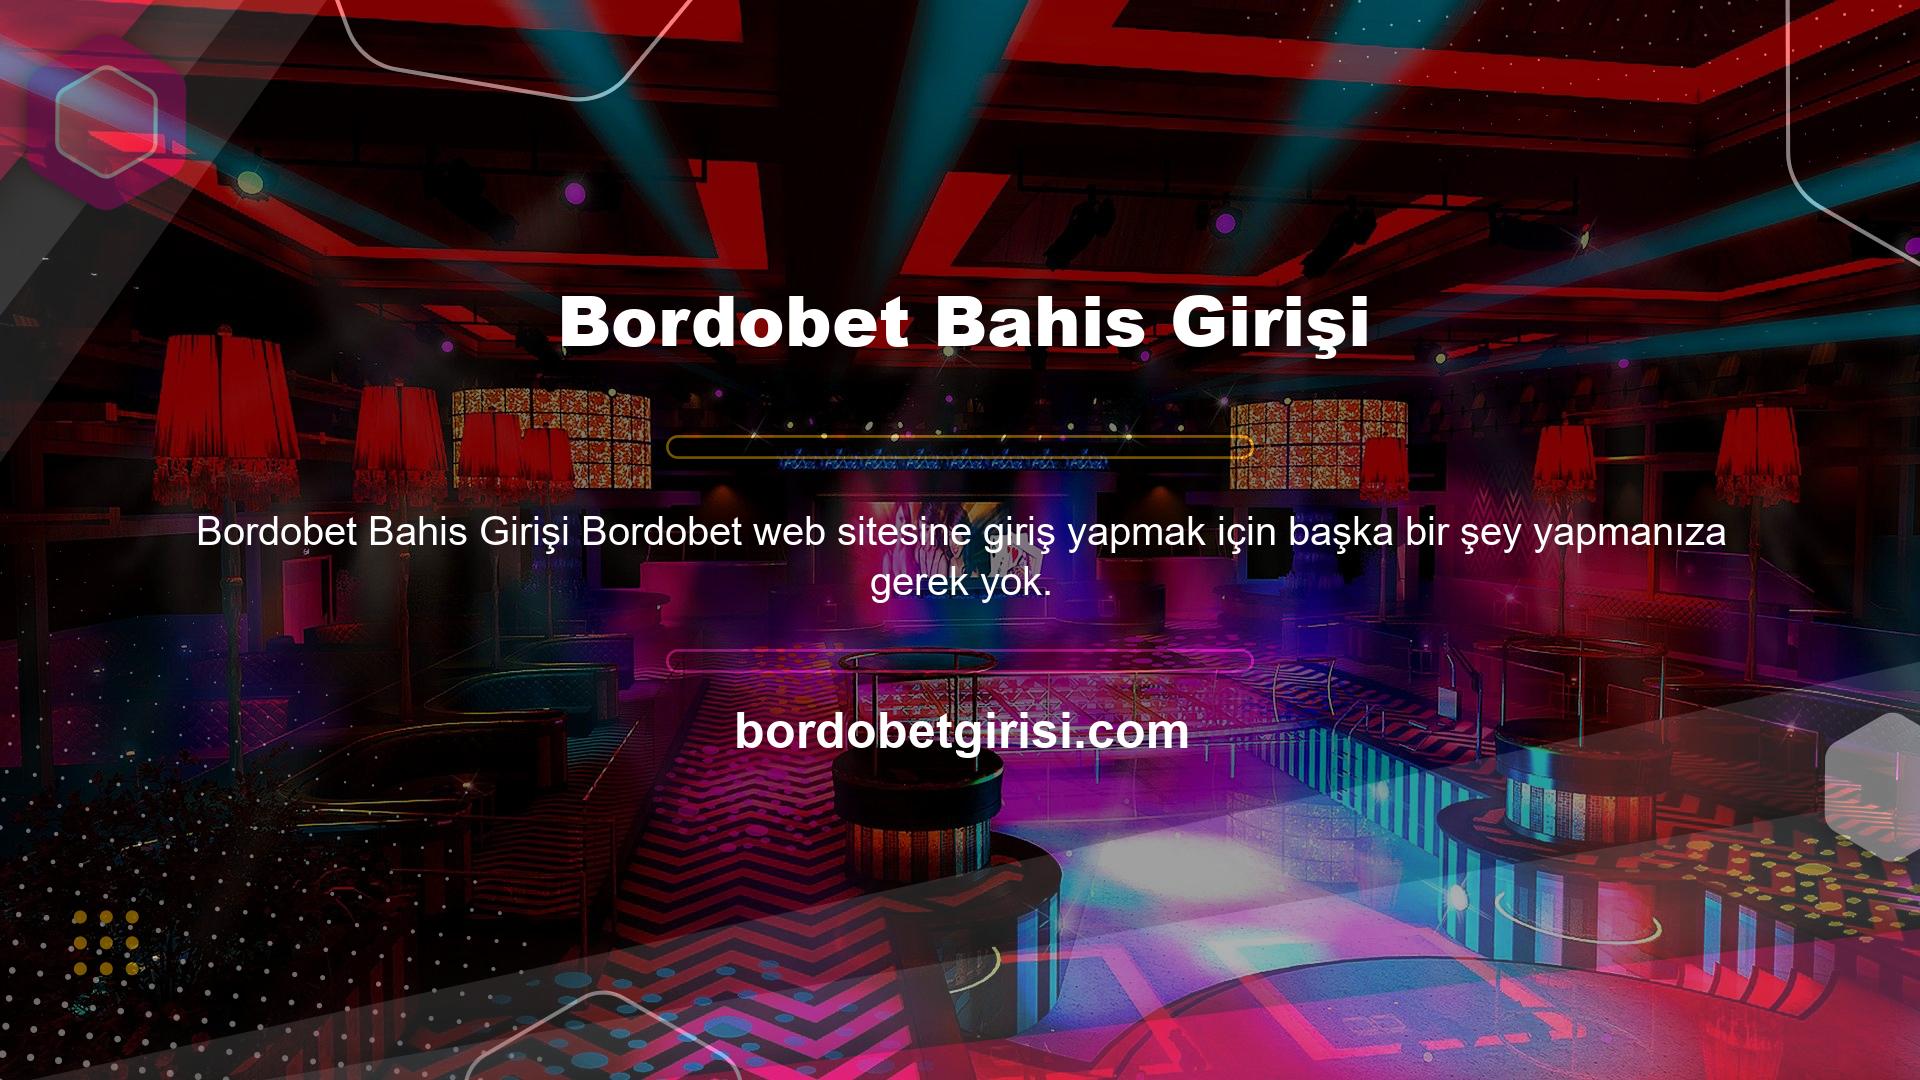 Hatta şimdi Bordobet web sitesini yazarak internet üzerinden Bordobet web sitesine giriş yapabilirsiniz